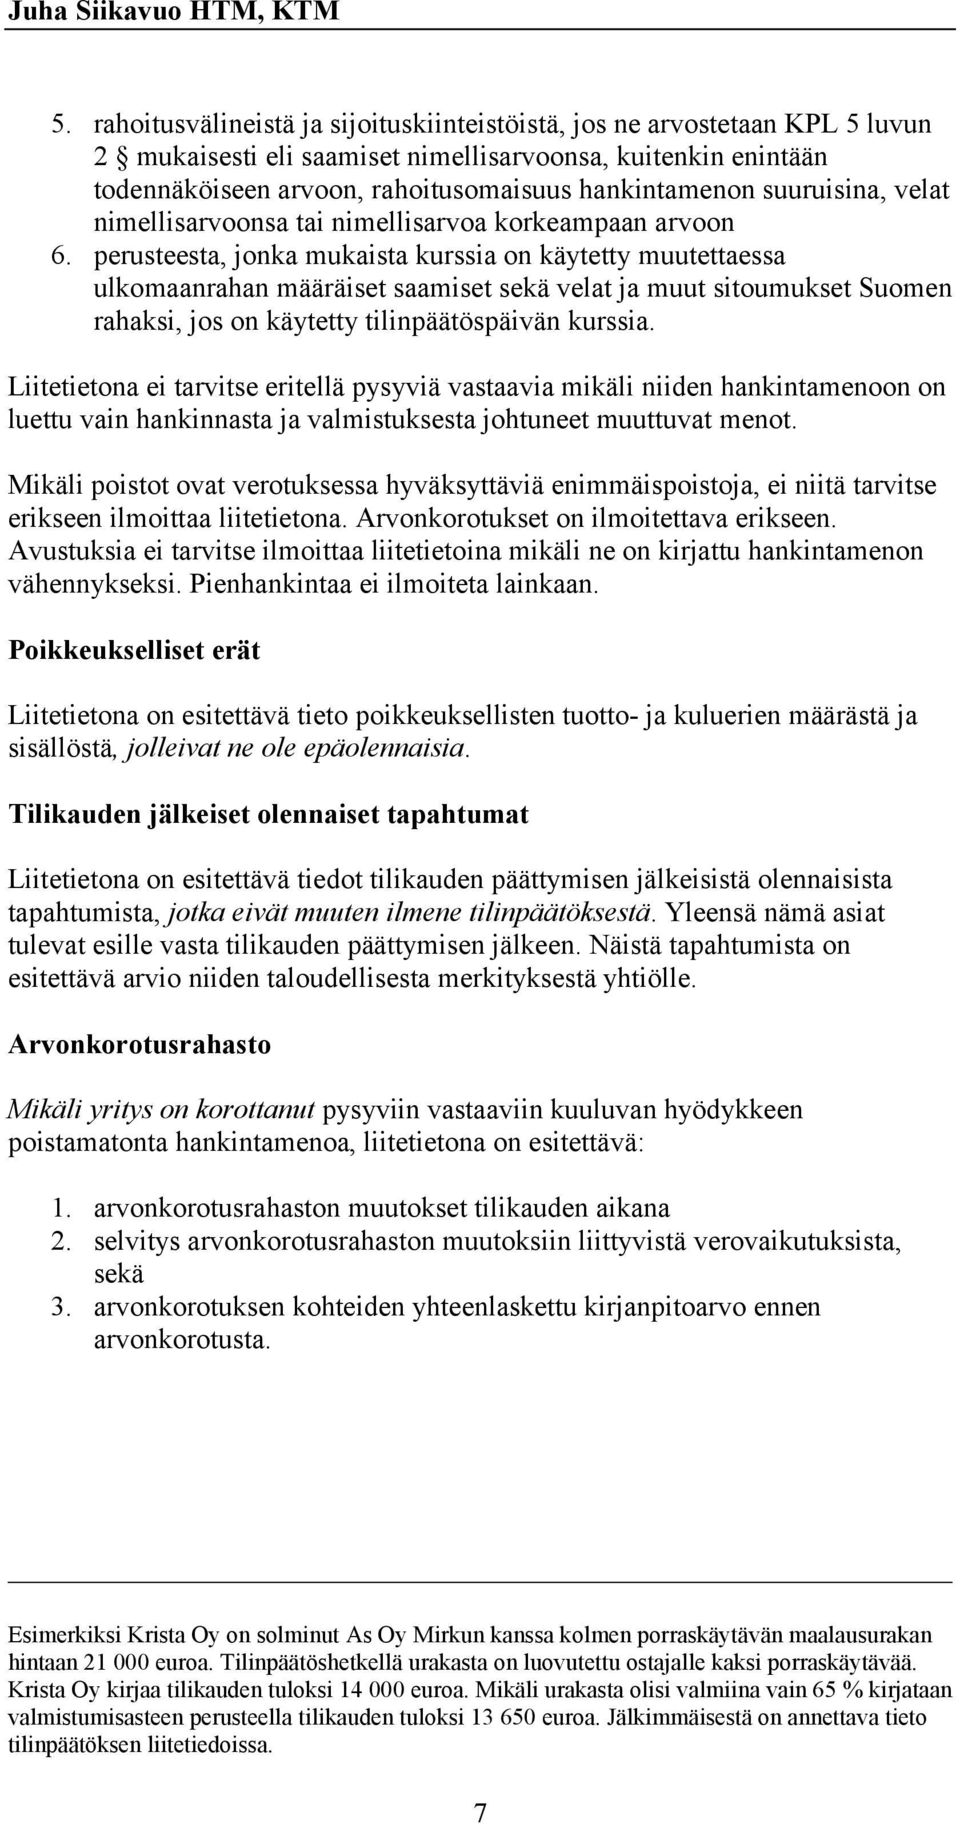 perusteesta, jonka mukaista kurssia on käytetty muutettaessa ulkomaanrahan määräiset saamiset sekä velat ja muut sitoumukset Suomen rahaksi, jos on käytetty tilinpäätöspäivän kurssia.